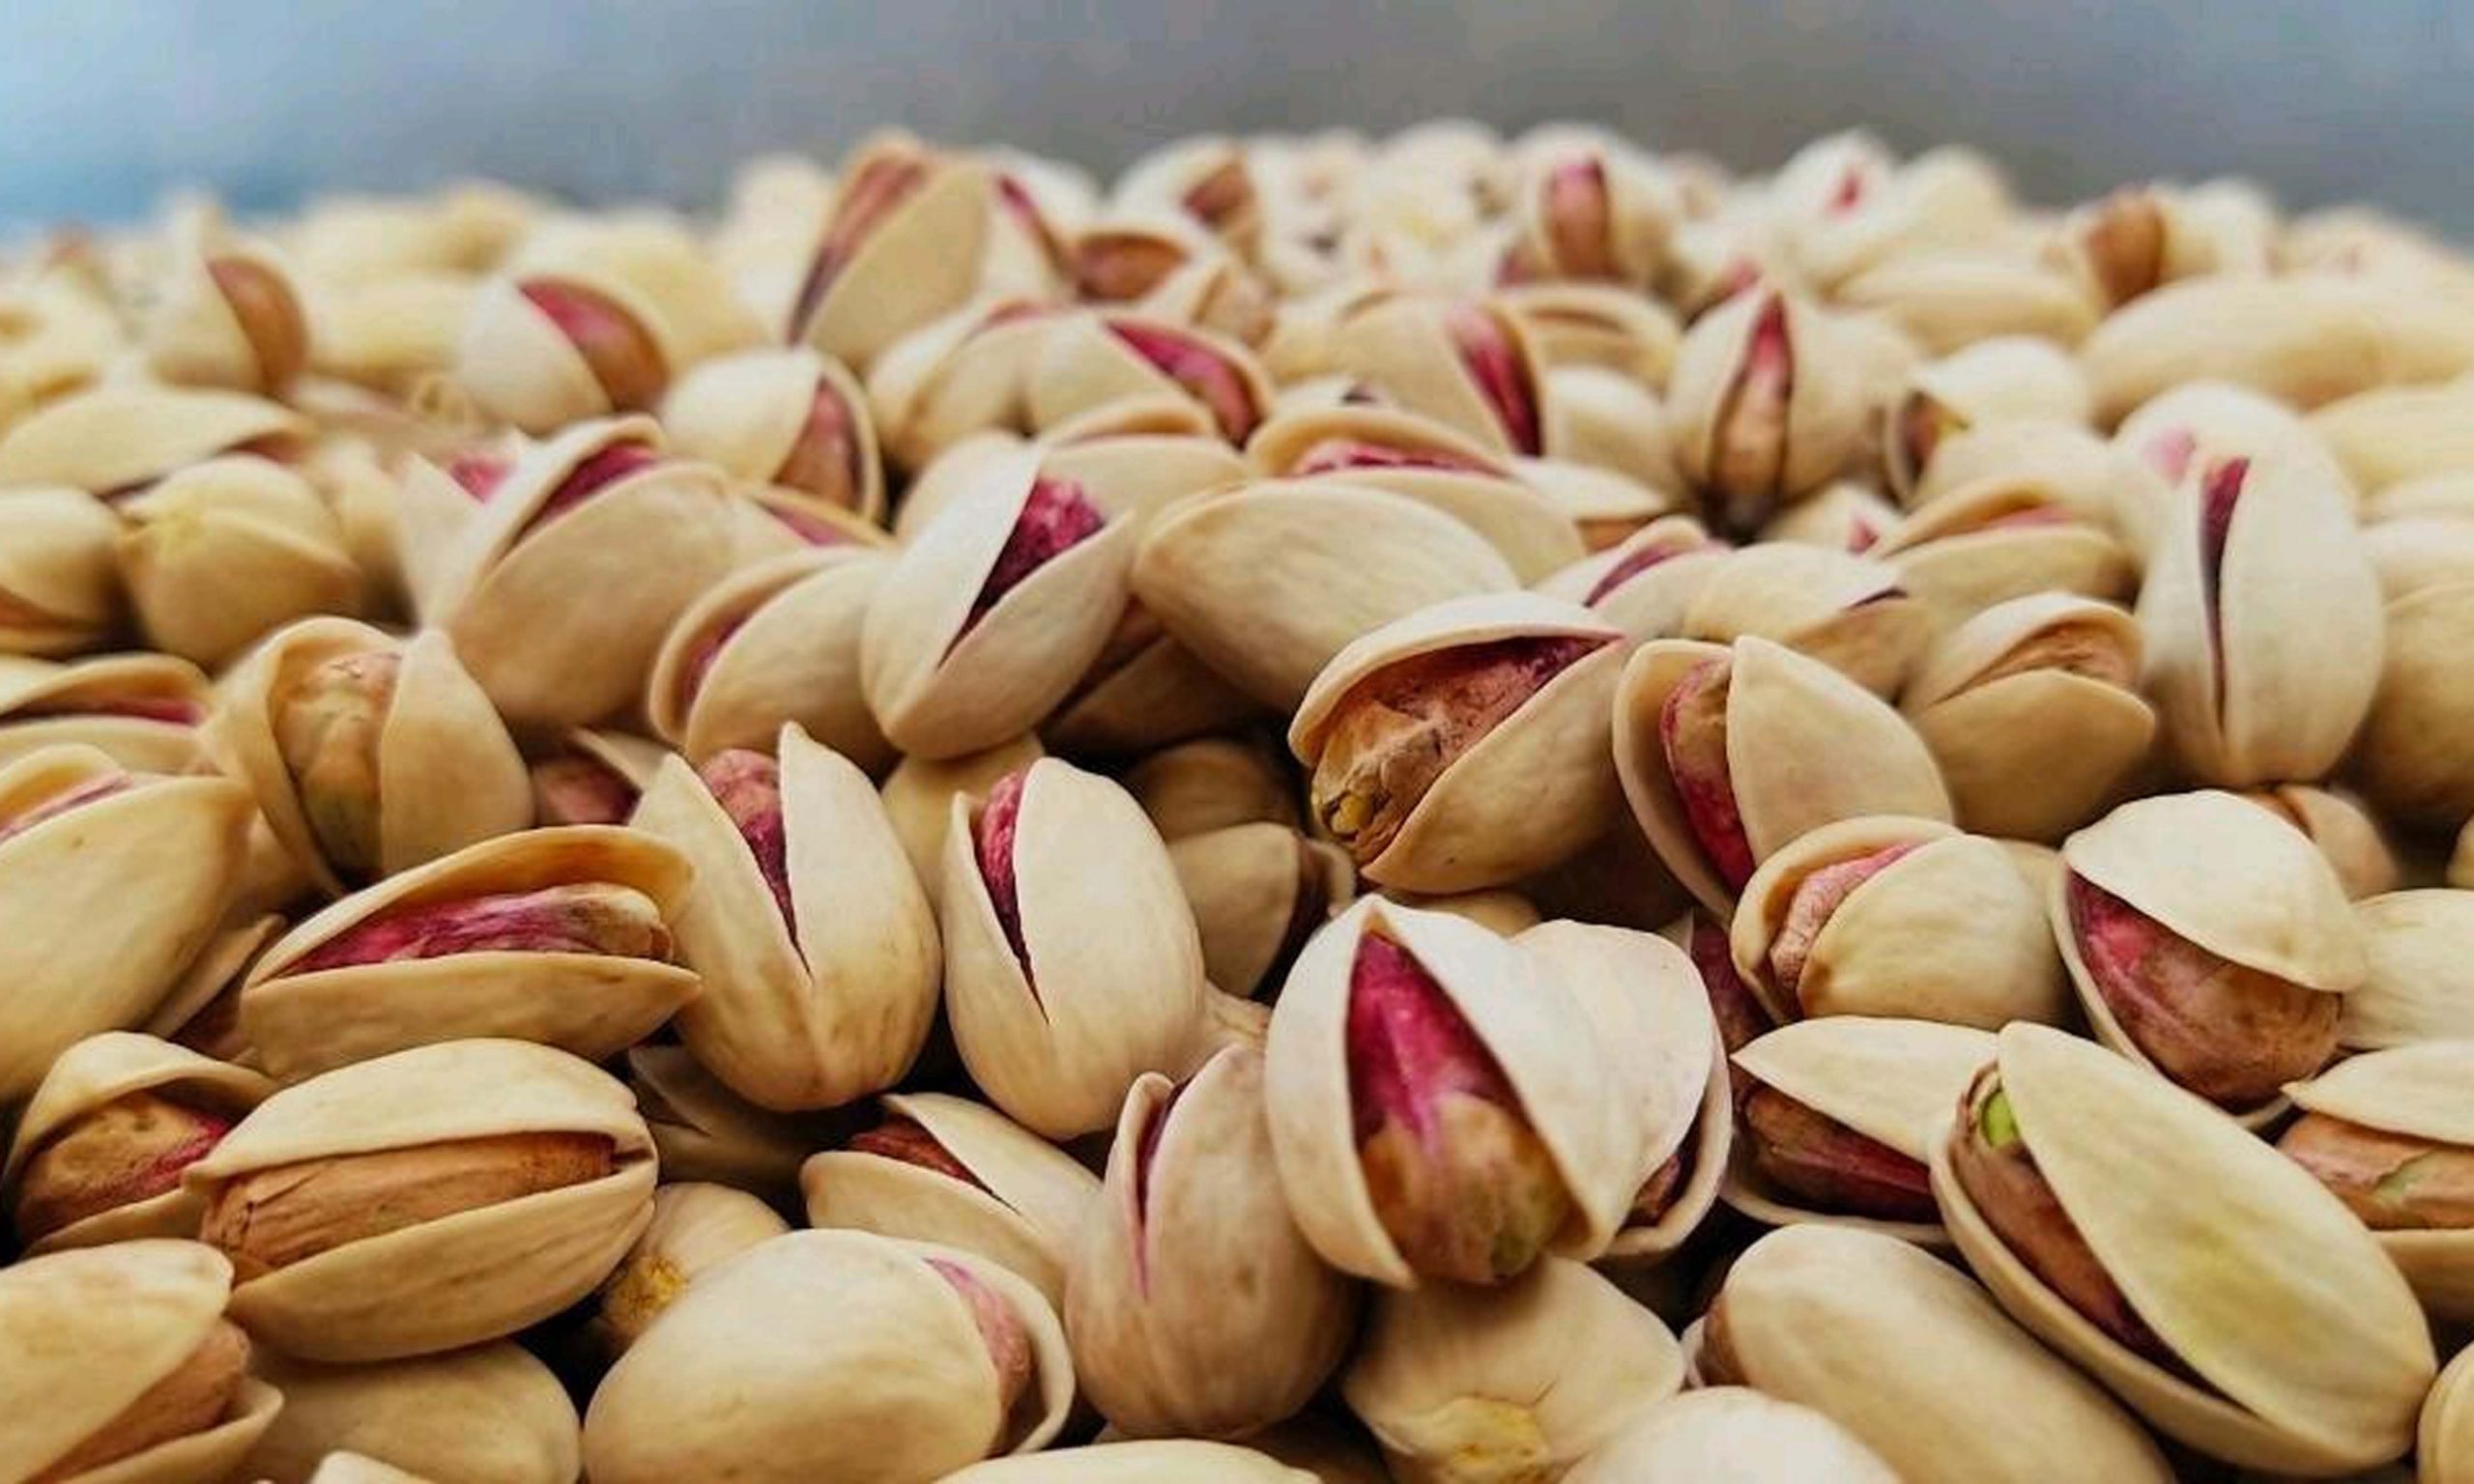 Pistachio Price List - Iran Pistachio Price Per KG in Dubai - Nutex Nuts Company